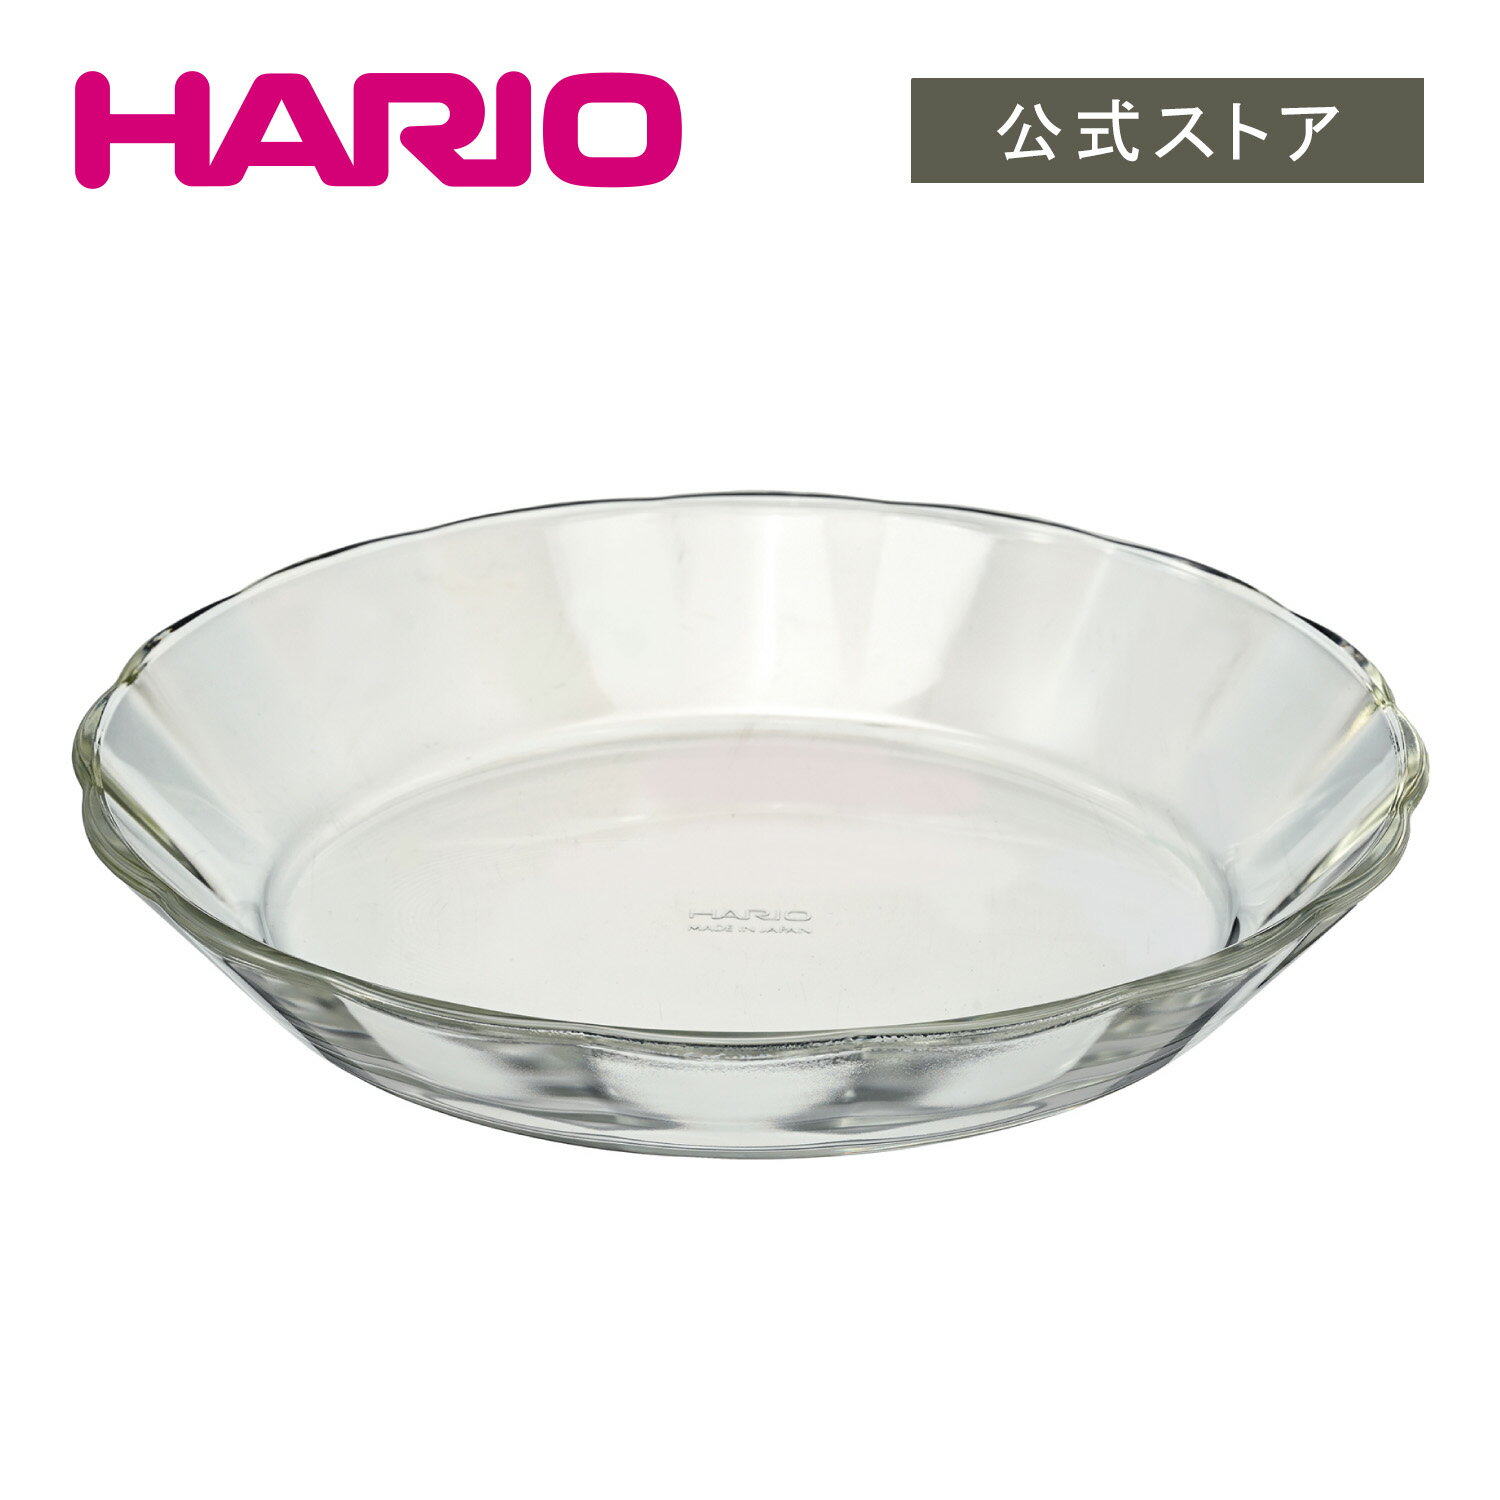 【公式ショップ】HARIO 耐熱ガラス製 プレート 1100　HARIO ハリオ 皿 ガラス かわいい ワンプレート